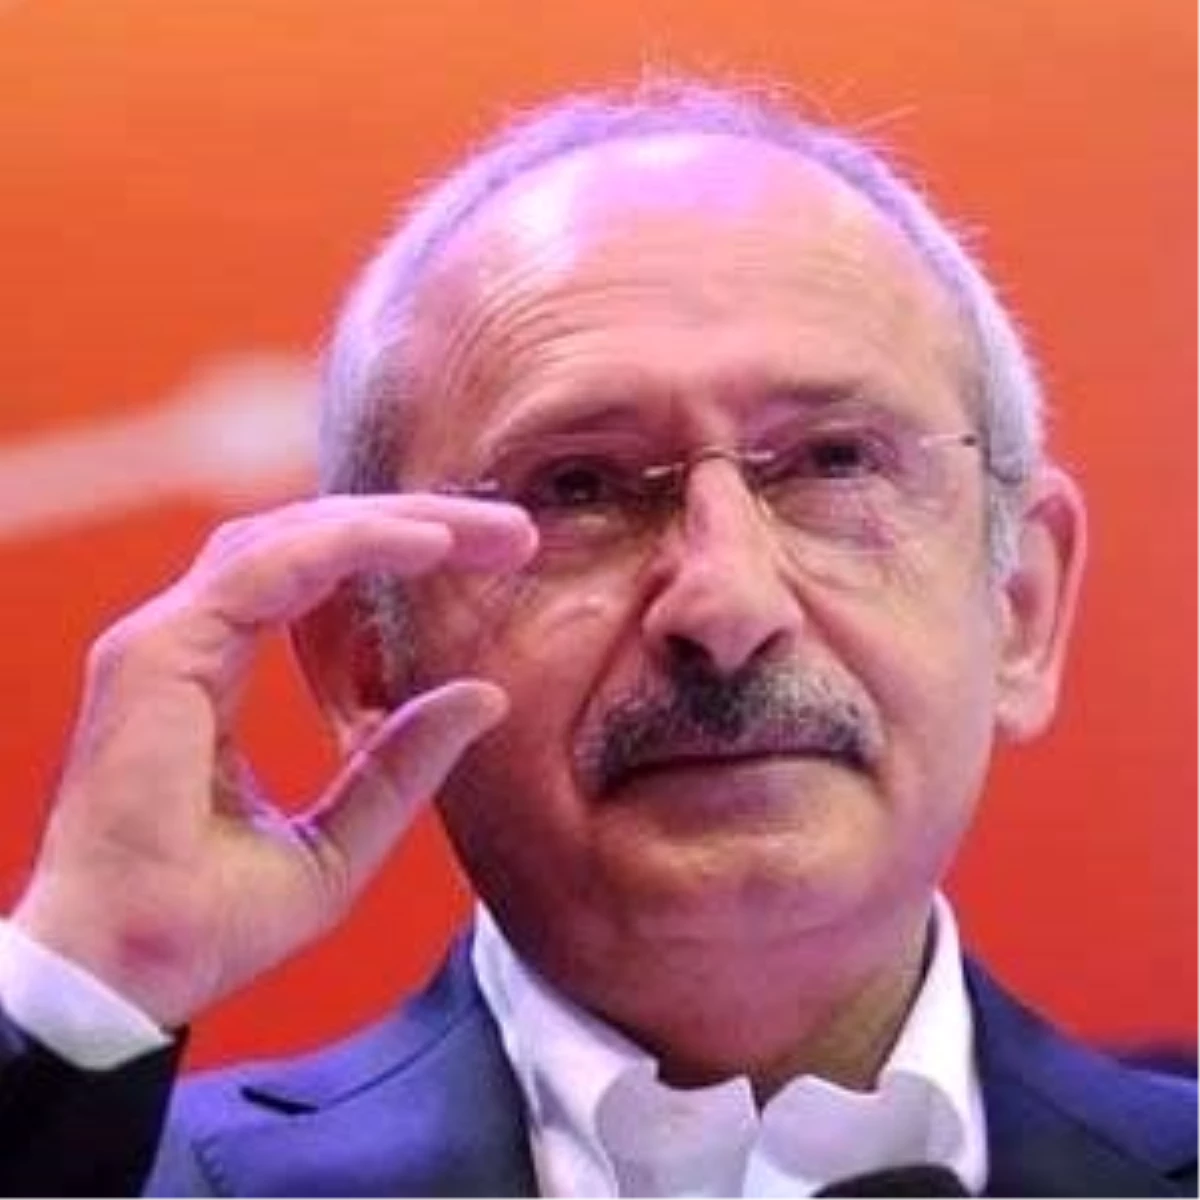 CHP Lideri Kılıçdaroğlu: "Tutuklu Vekillerin Durumu Zaten Mahkemelerin Takdirinde"